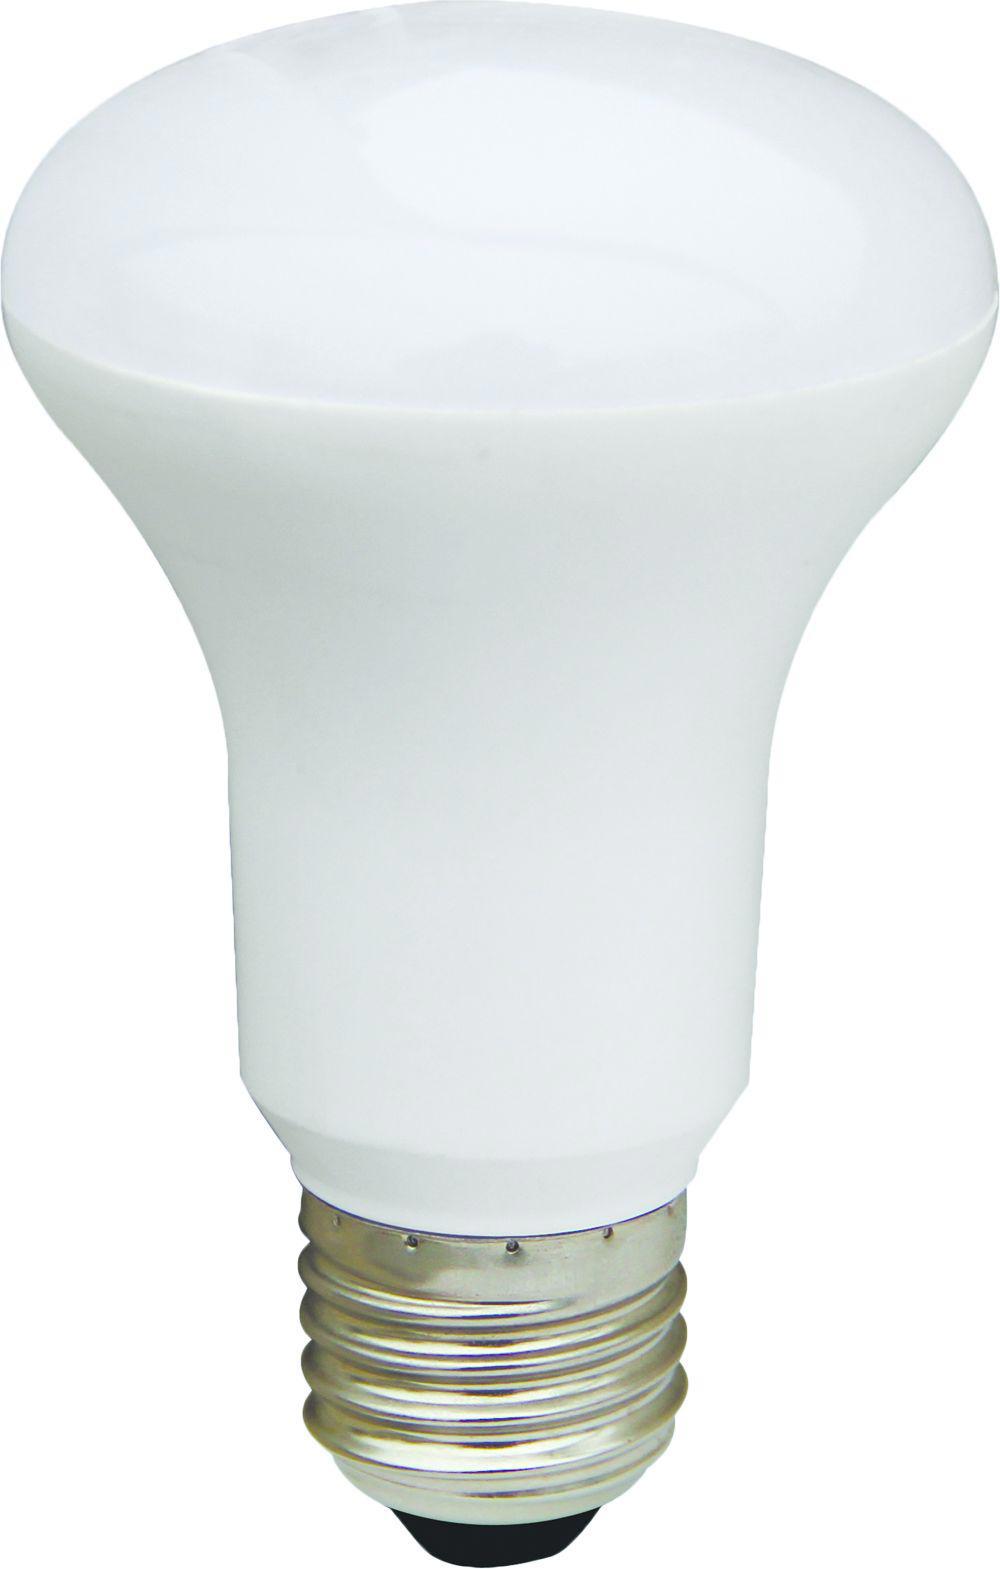 90121176 Лампа Premium светодионая E27 8 Вт рефлекторная 720 Лм холодный свет STLM-0112367 ECOLA